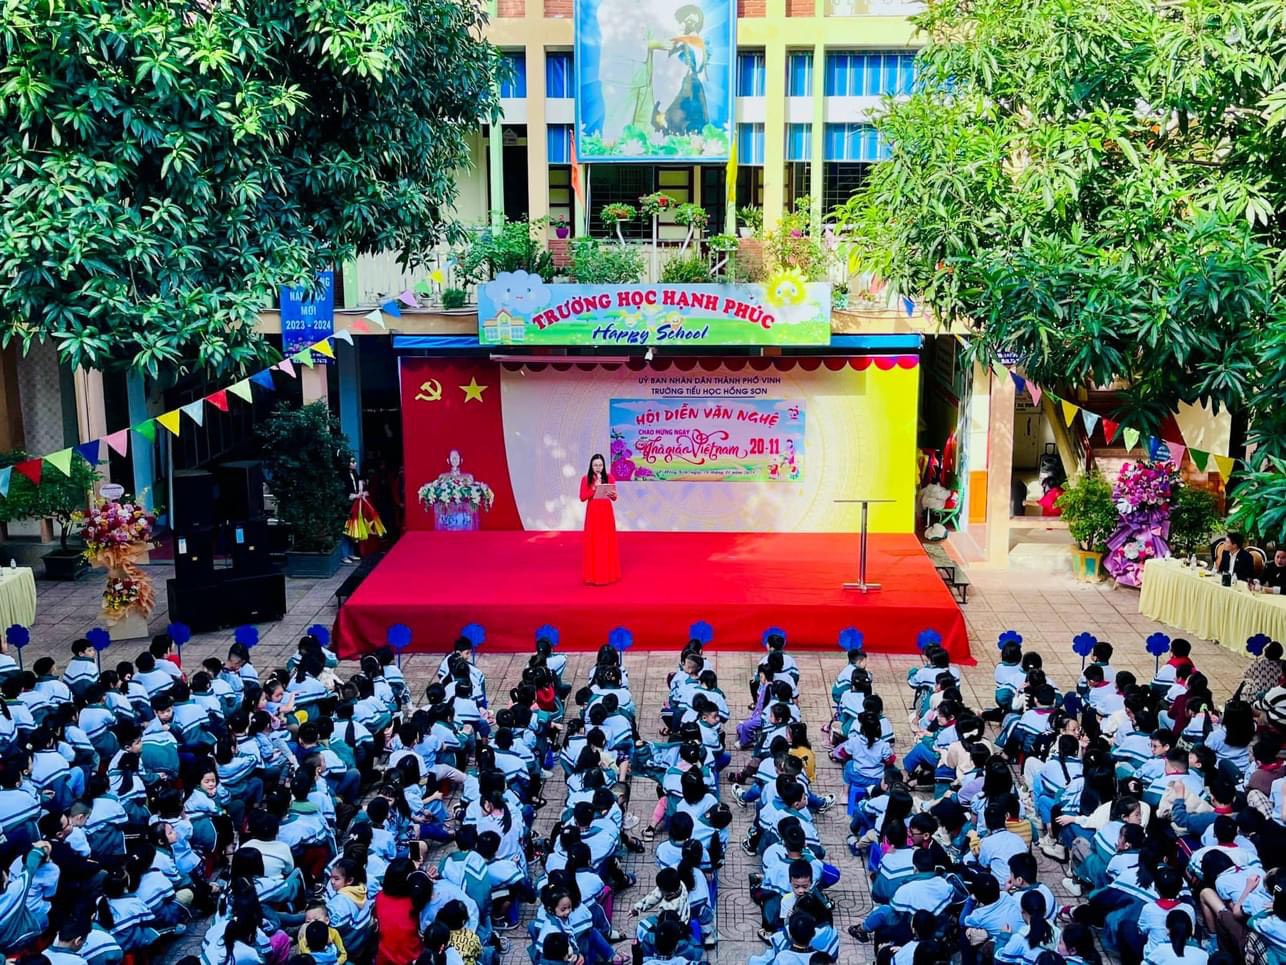 Hội diễn văn nghệ chào mừng kỷ niệm ngày Nhà giáo Việt Nam 20/11.